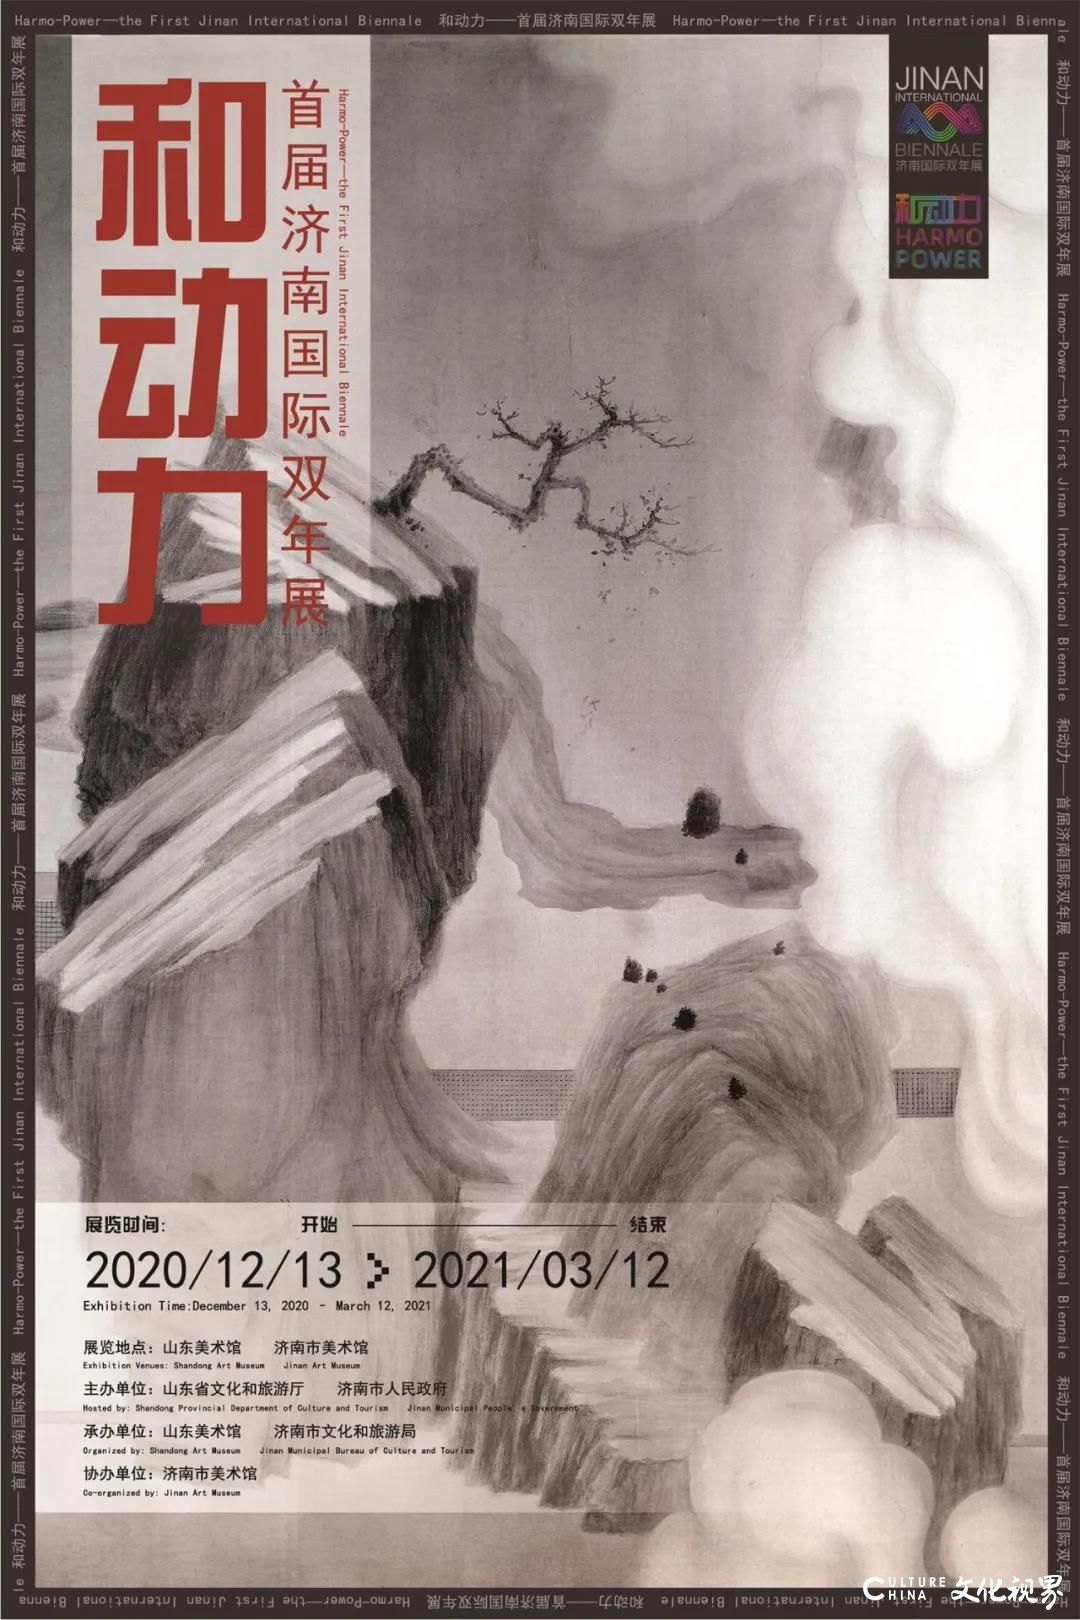 “和动力——首届济南国际双年展”3月12日结束，参展艺术家强大阵容一览（十三）：岳海波、刘明波、杨晓刚篇